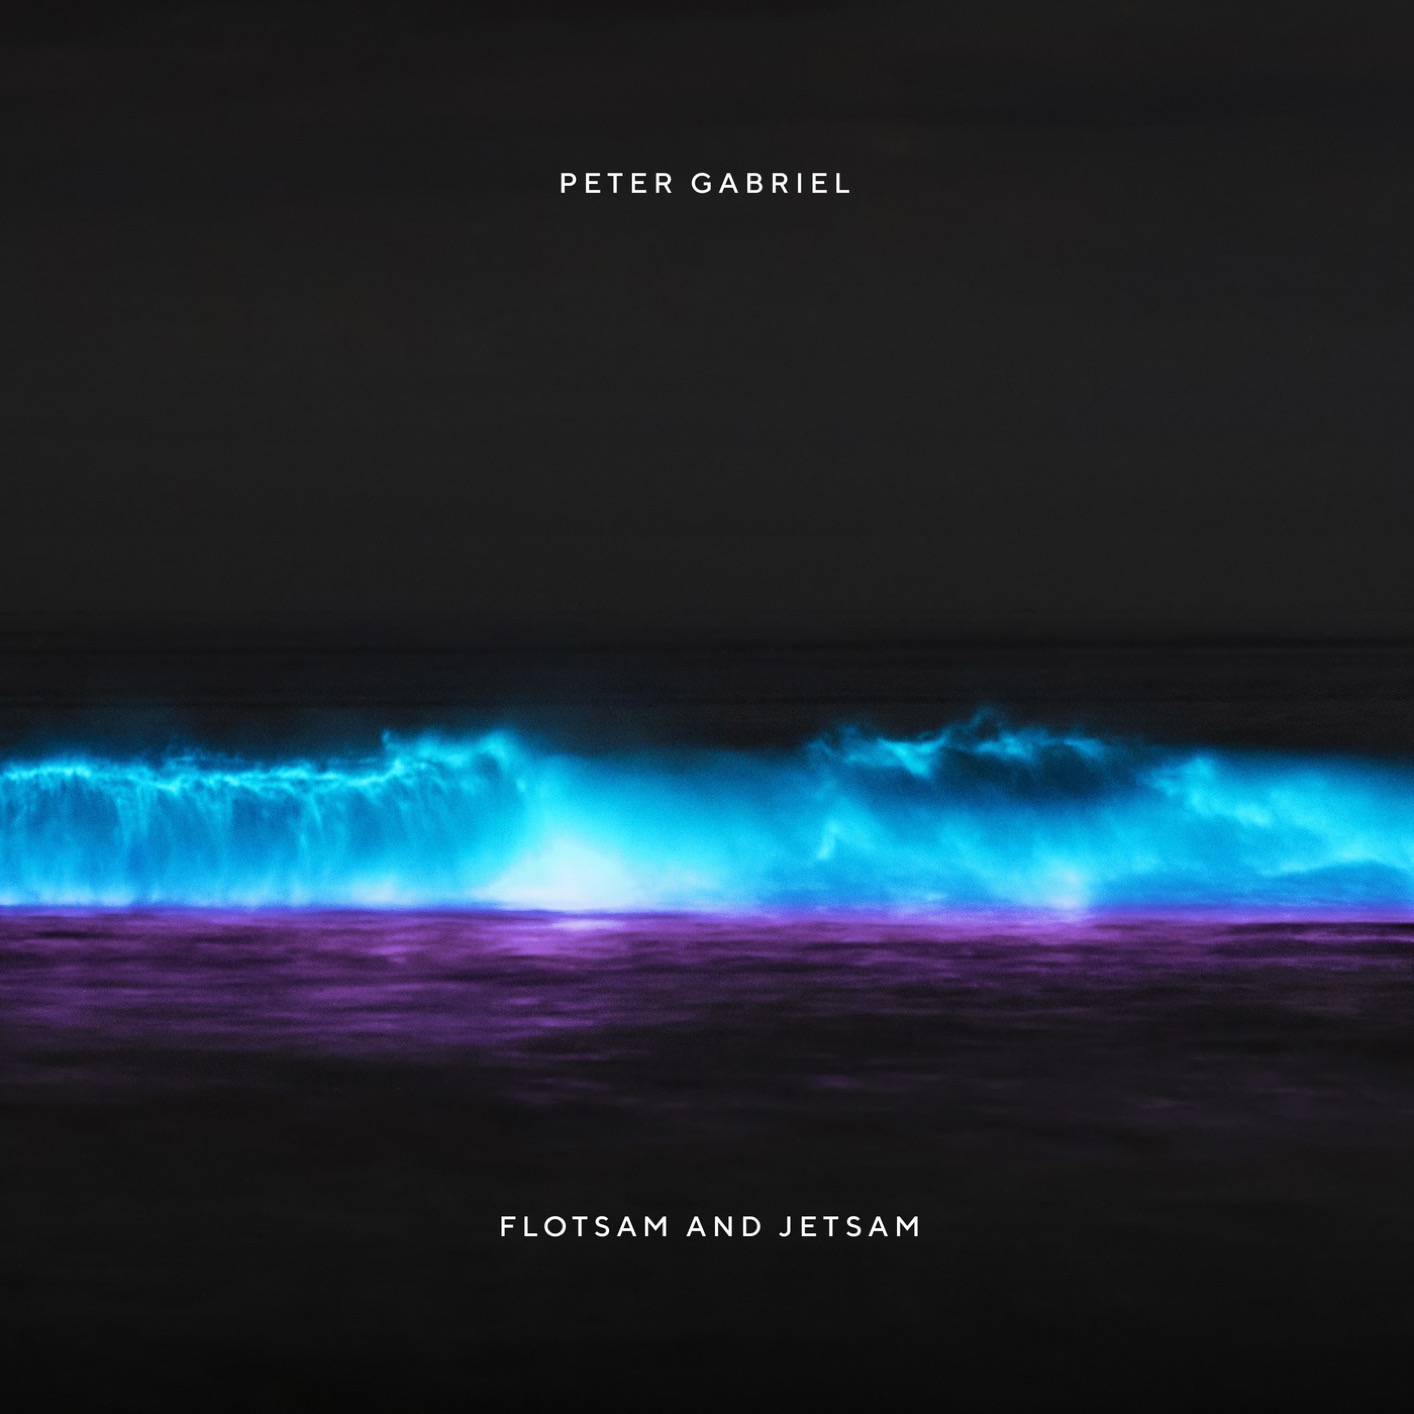 Peter Gabriel - Flotsam And Jetsam (Remastered) (2019) [FLAC 24bit/48kHz]